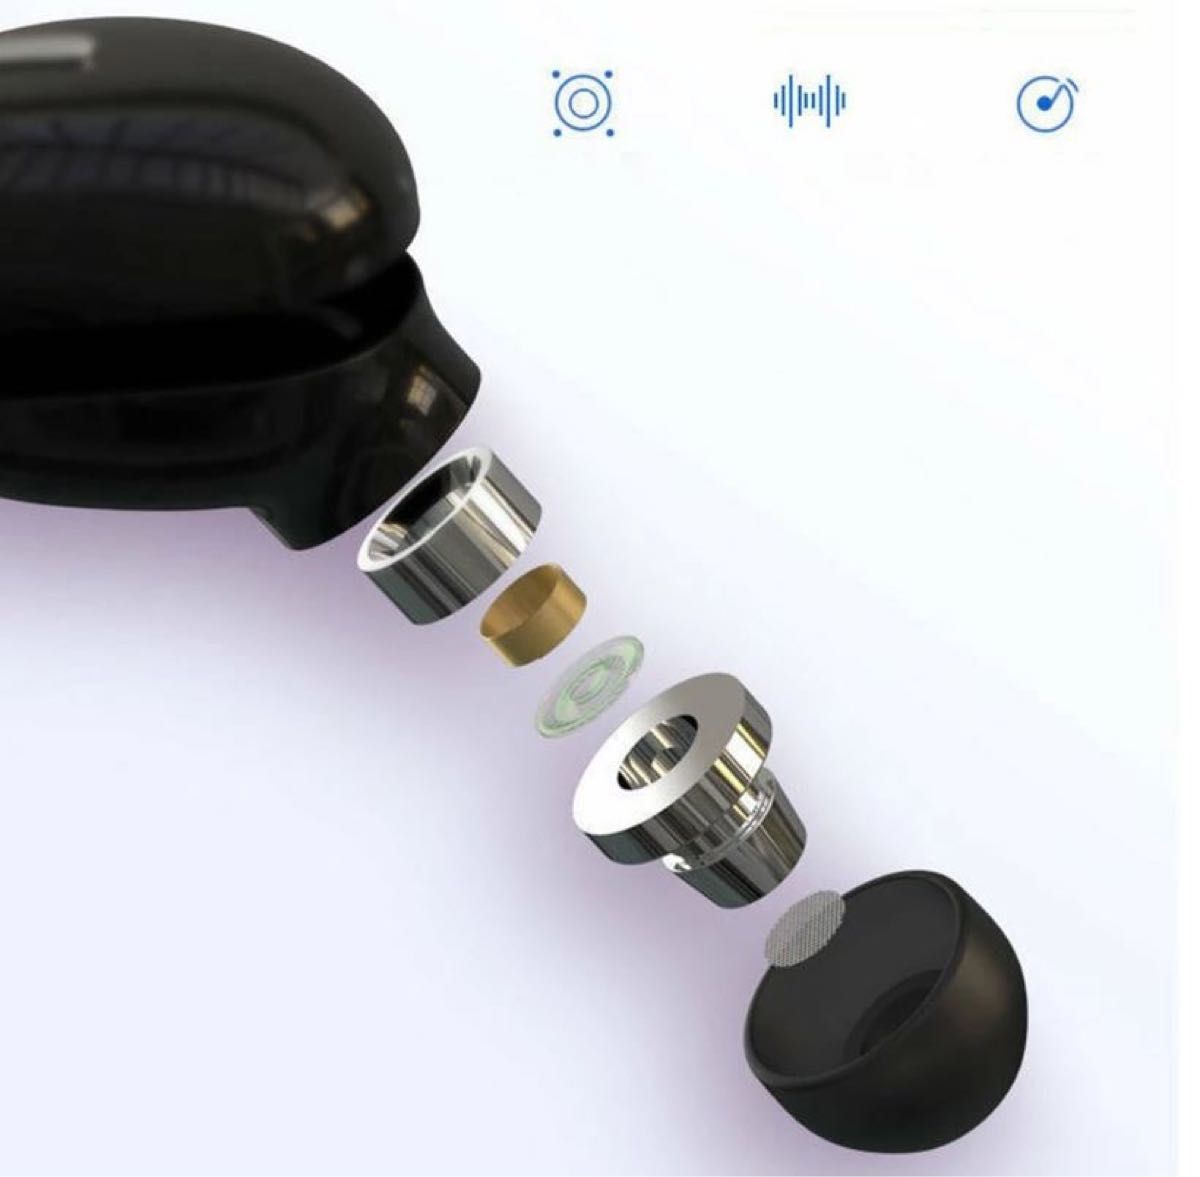 ワイヤレスイヤホン Bluetooth5.0 インイヤー カナル型 片耳用 スポーツ ハンズフリー ブラック 